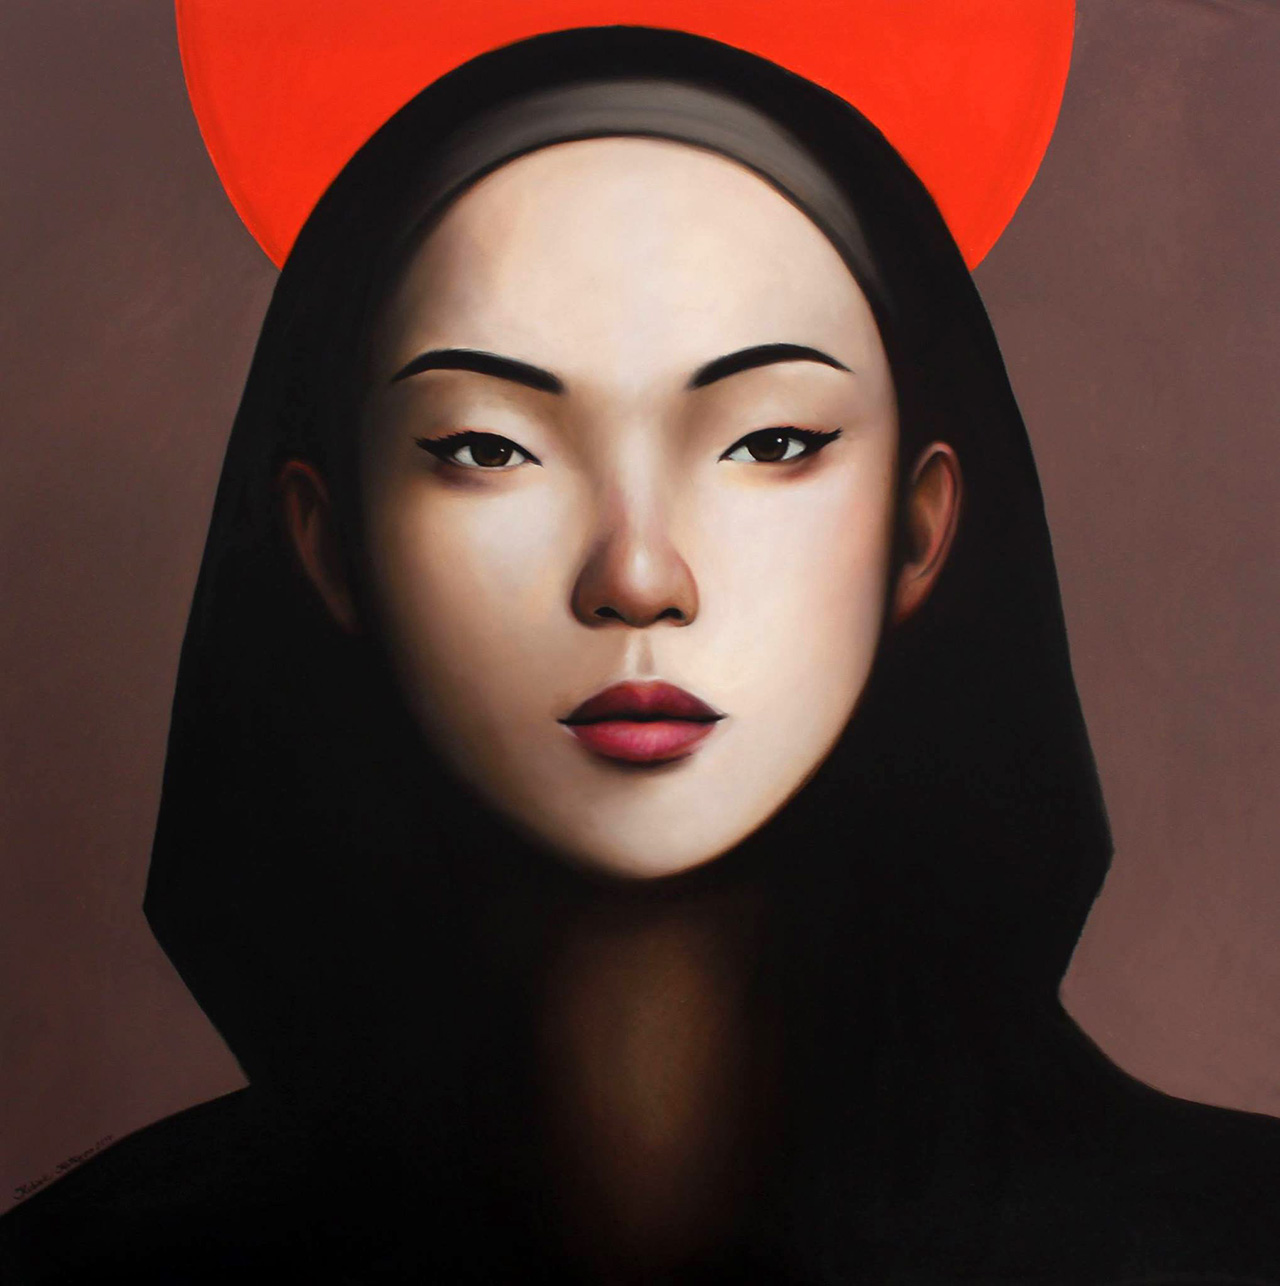 Katarzyna Kubiak - Japanese girl with a red halo (Oil on Canvas | Wymiary: 106 x 106 cm | Cena: 5500 PLN)